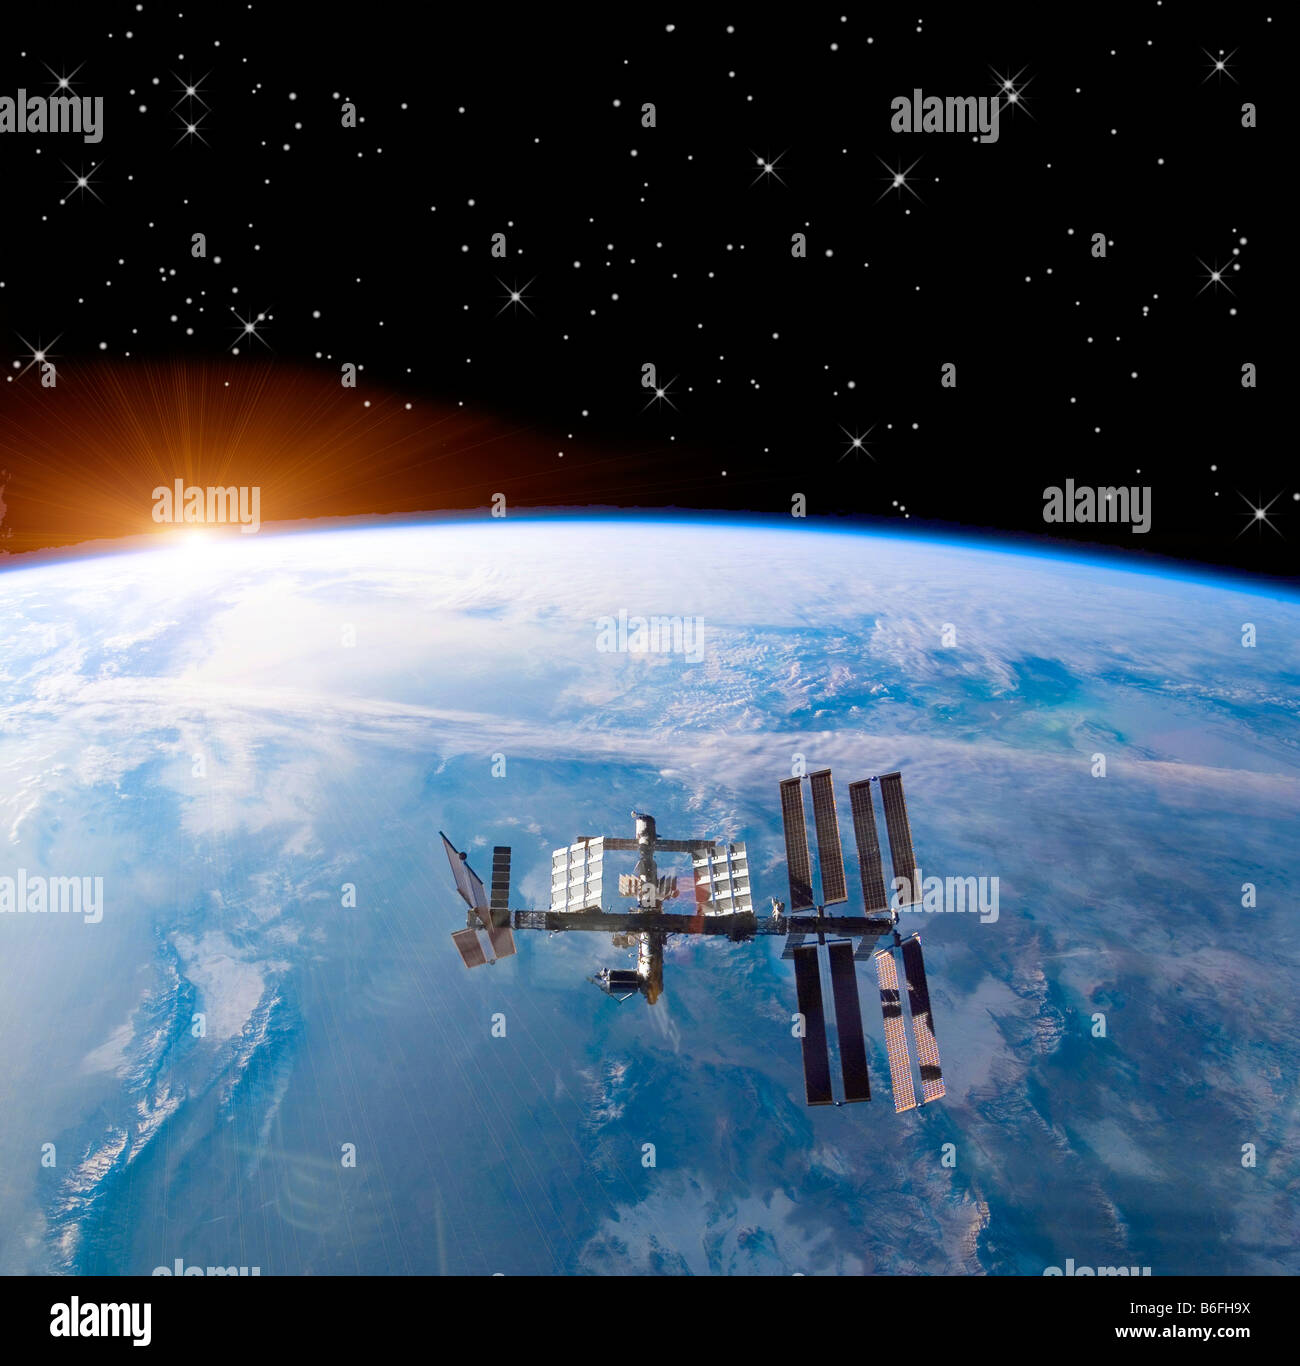 verbesserte NASA Computerbild der International Space Station (ISS) fliegen über Erde Sonnenaufgang Stockfoto